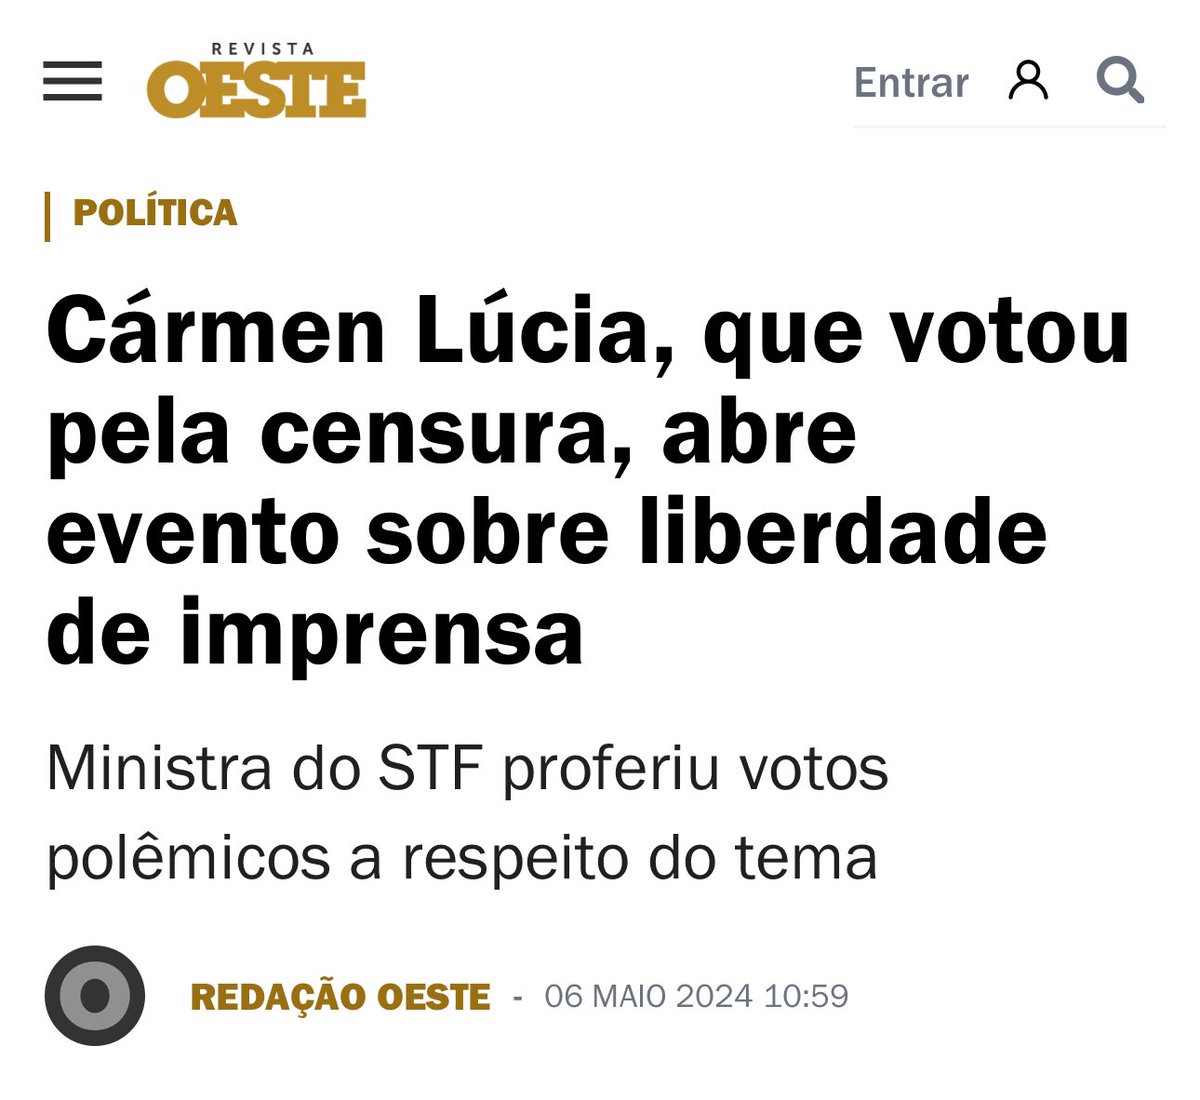 Eu não me importo o que pensa cada Ministro, desde que eles cumpram a Constituição. Se teve censura, e teve, rasgou-se a Constituição. A minha pergunta é simples: o Brasil voltará a ser uma democracia constitucional? Se sim, quando?